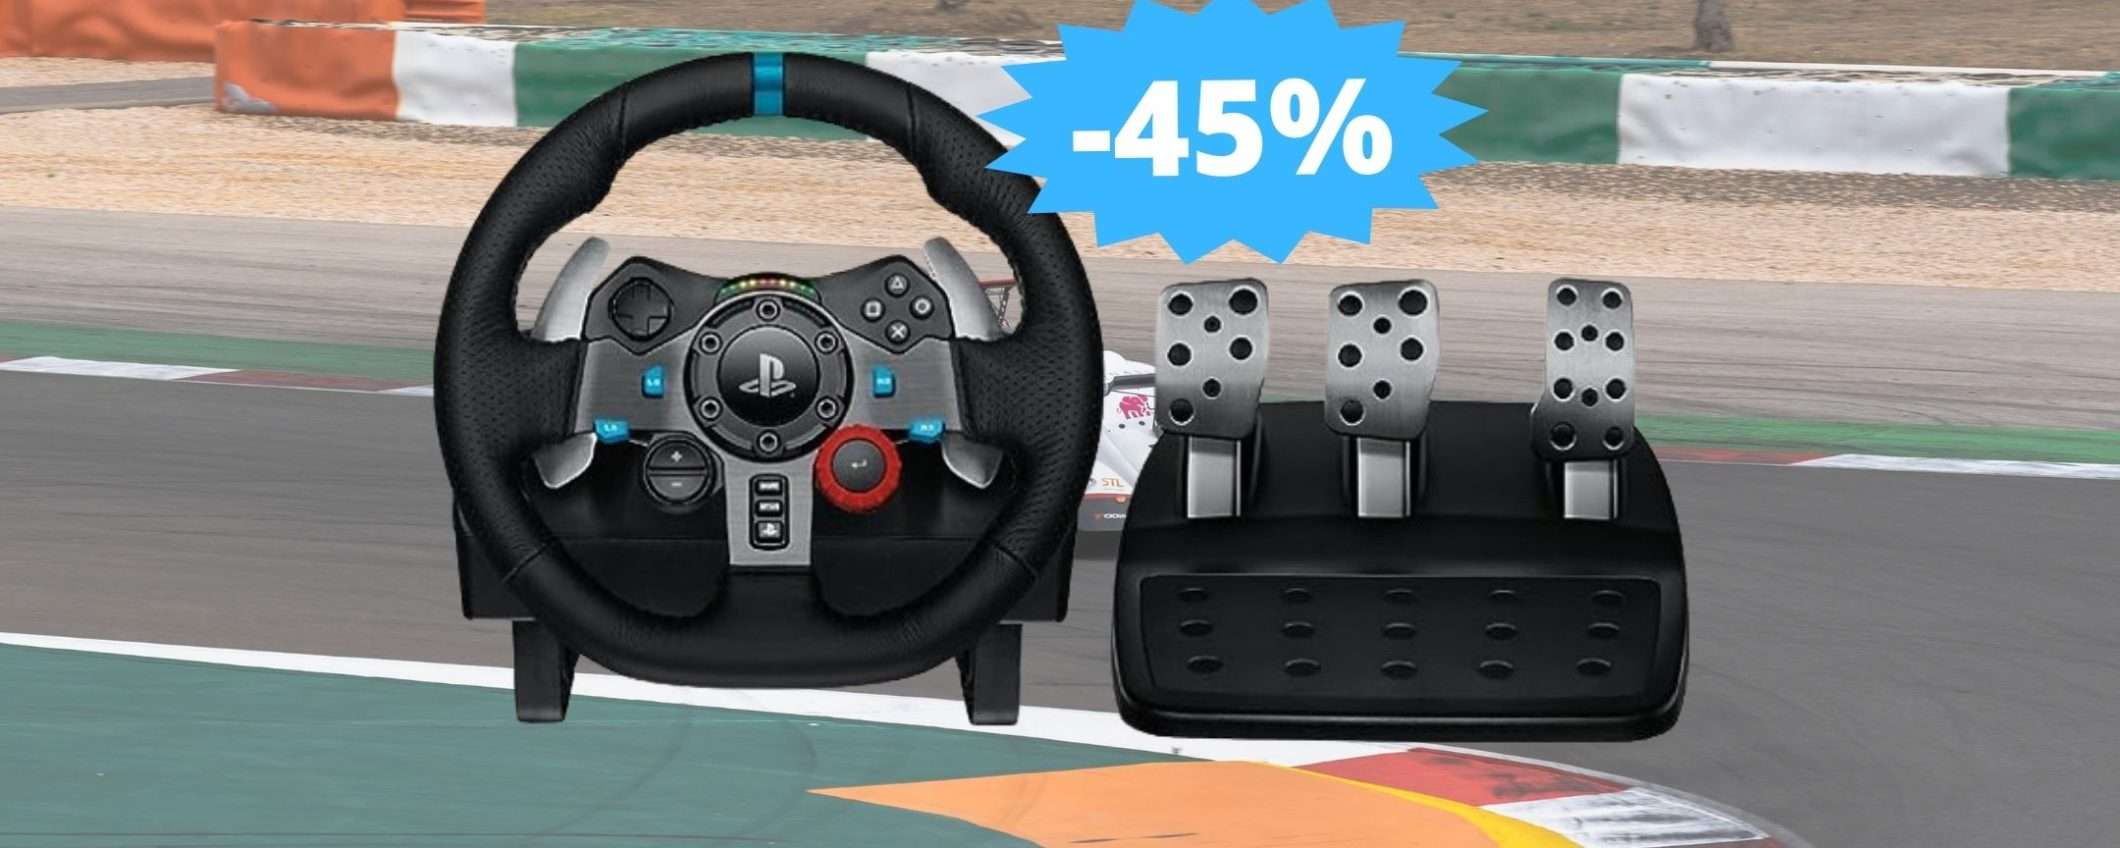 Logitech G29 Driving Force: AFFARE imperdibile su Amazon (-45%)